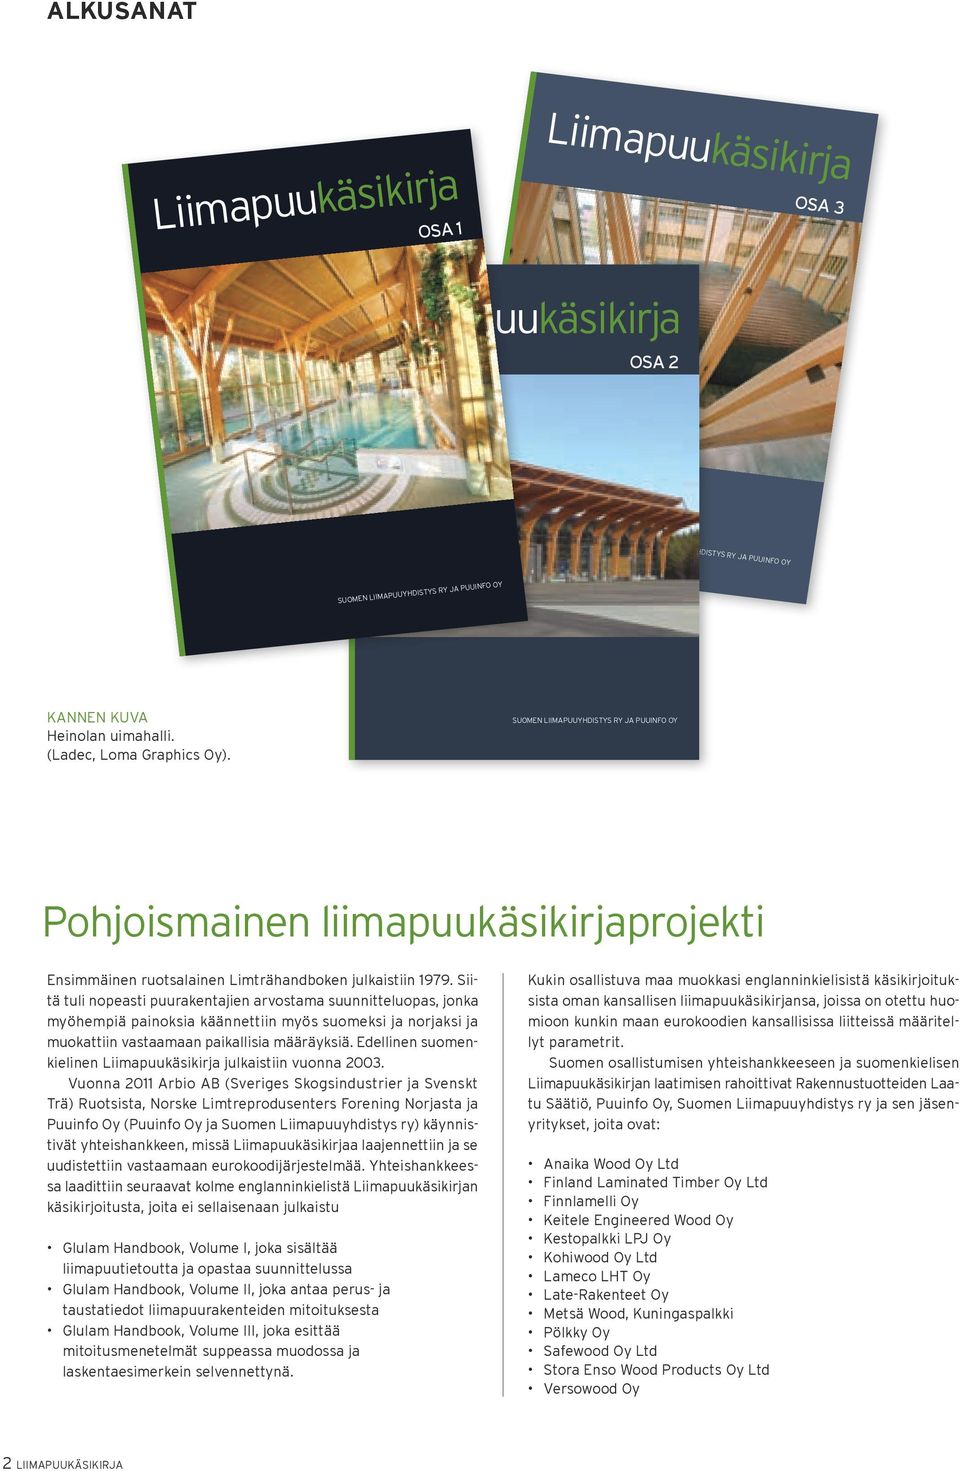 Siitä tuli nopeasti puurakentajien arvostama suunnitteluopas, jonka myöhempiä painoksia käännettiin myös suomeksi ja norjaksi ja muokattiin vastaamaan paikallisia määräyksiä.